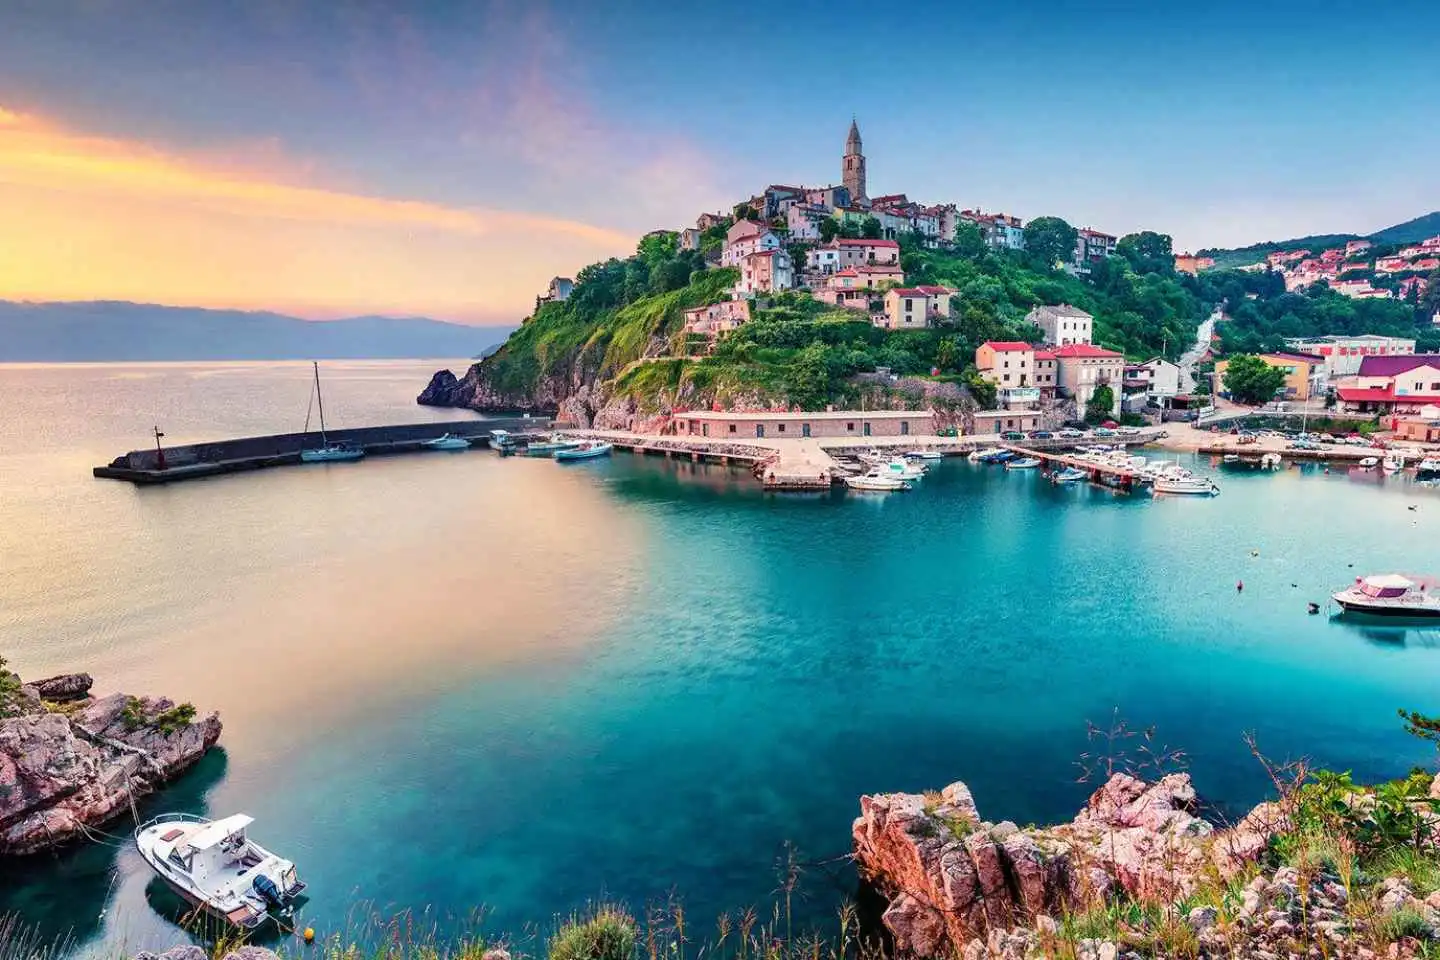 Rijeka tourism